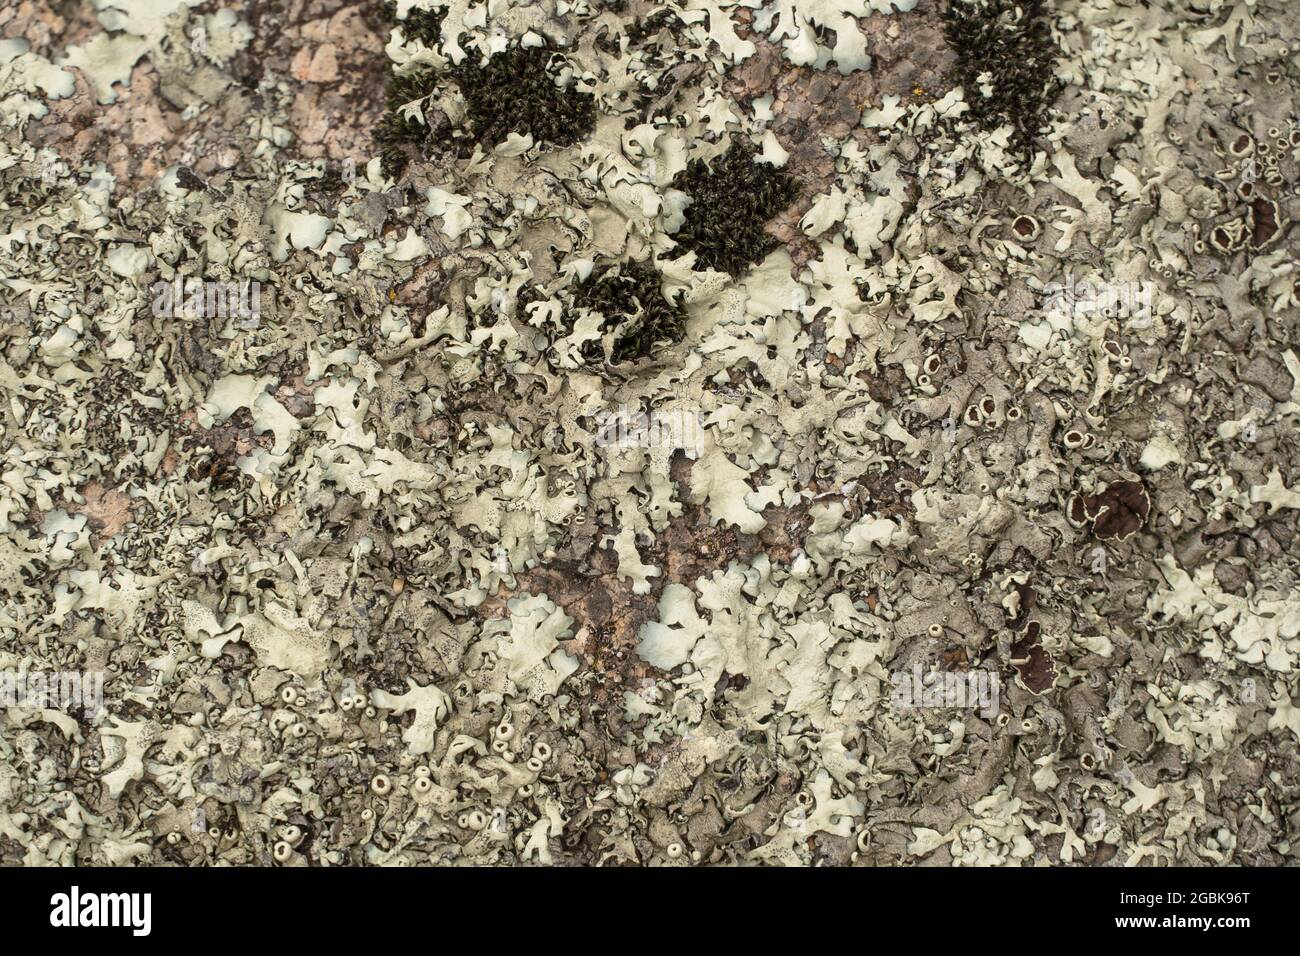 Lichen sur l'écorce d'un arbre. Lichen texturé sur l'écorce d'un arbre dans les bois. Textures naturelles. Lichen sur le tronc de l'arbre. Plantes, nature, botanique. Biologie, s Banque D'Images